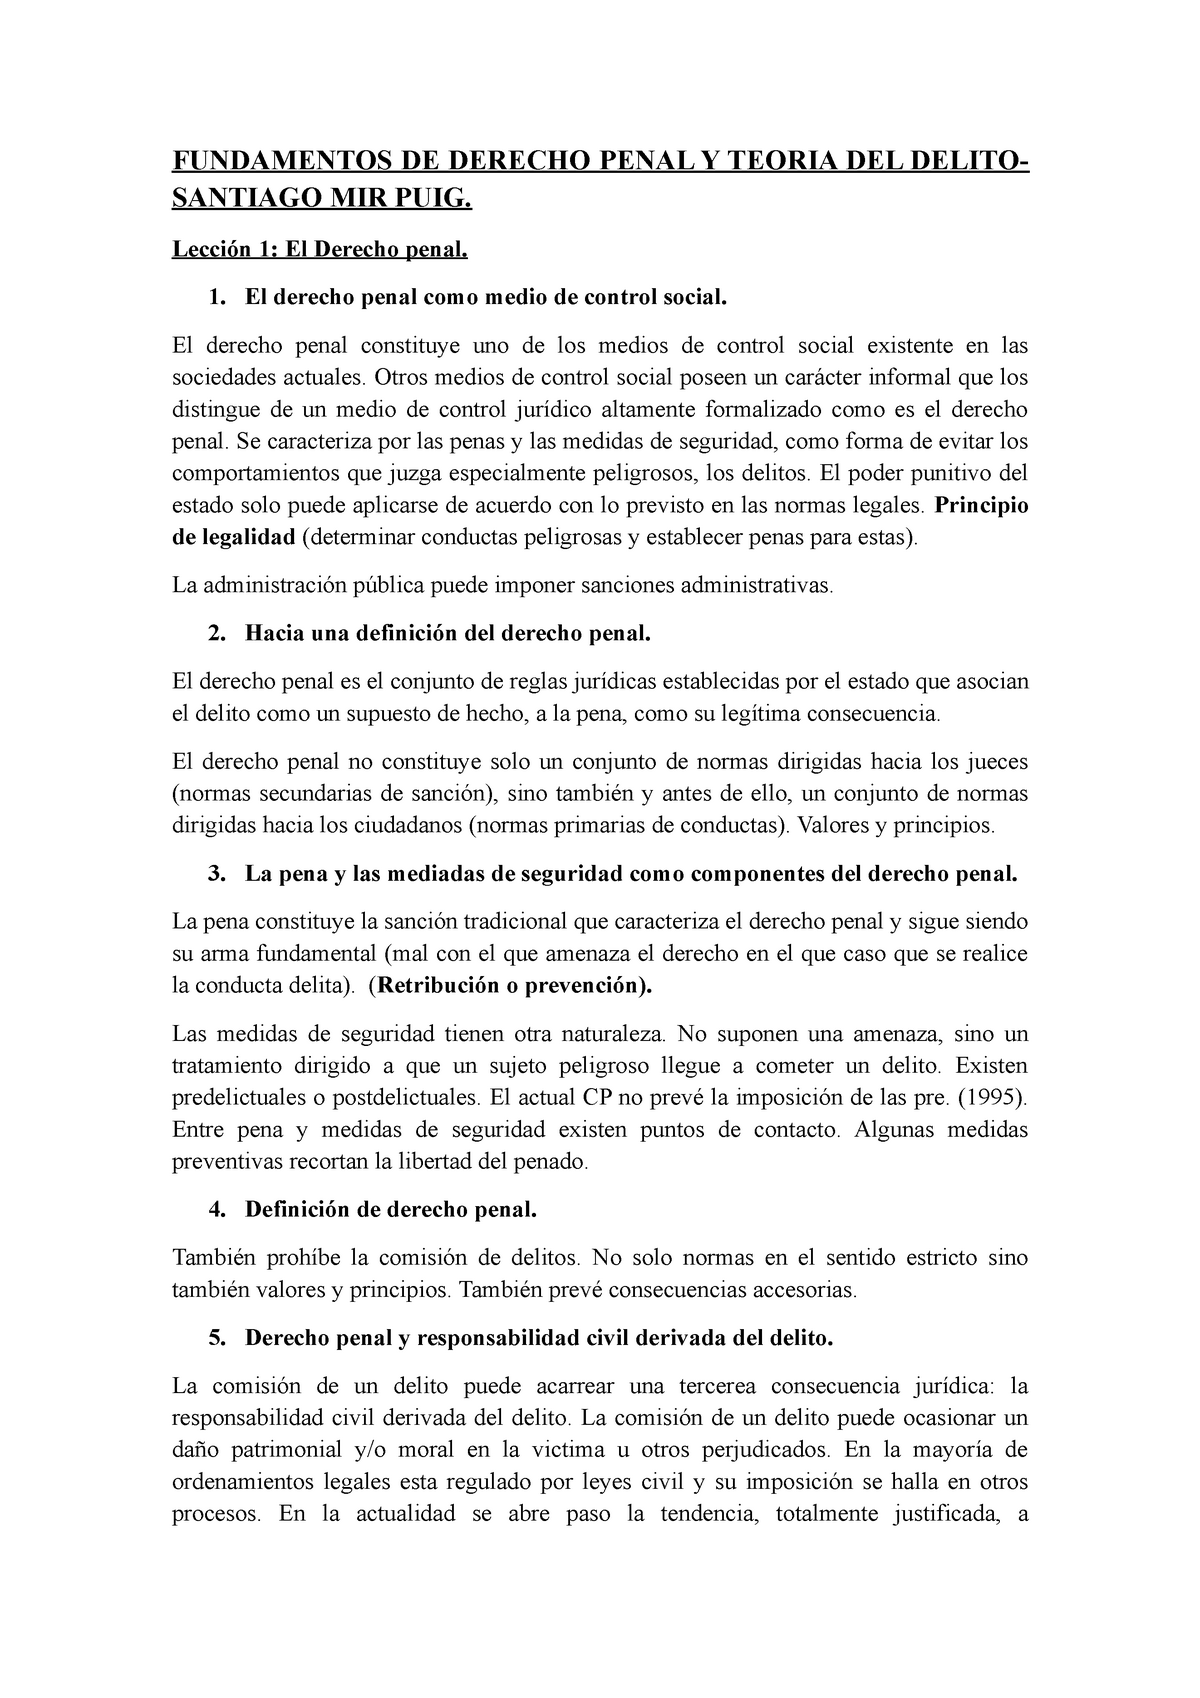 Capítulos De 1 Al 14 Manual Fundamentos De Derecho Penal Y Teoria Del Delito Santiago Mir 5203